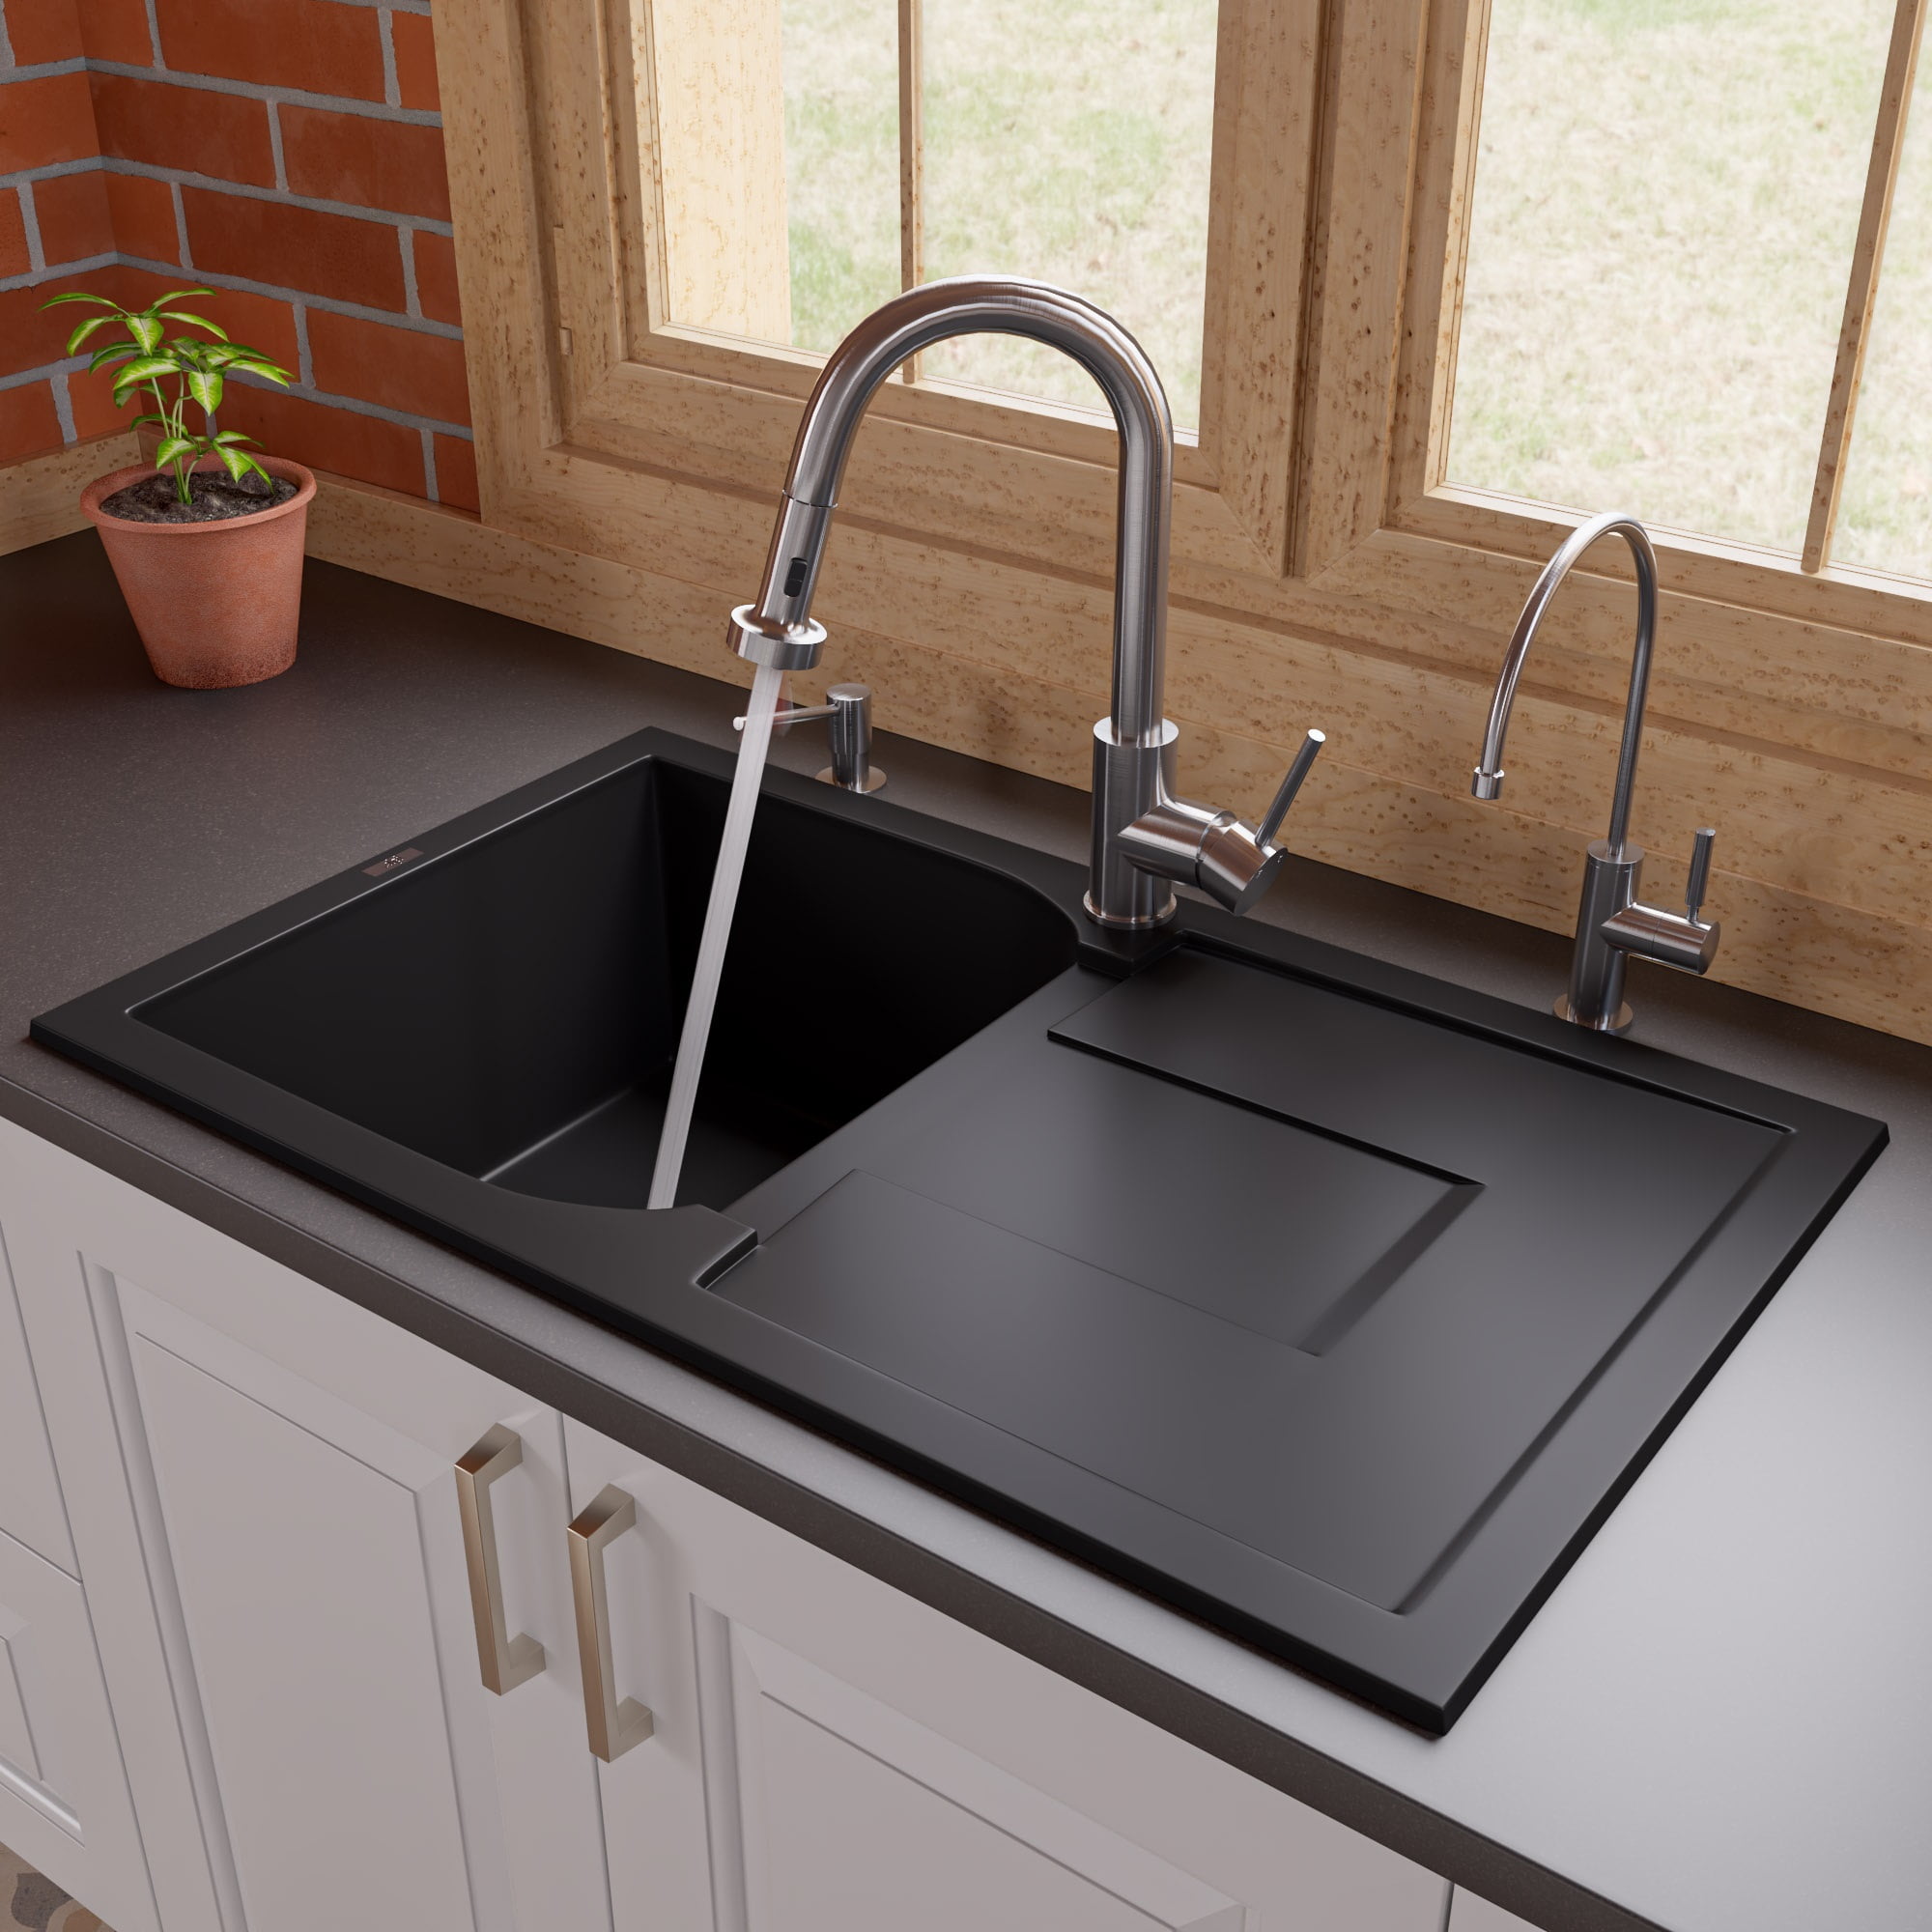 Ab1620di-bla 34 In. Single Bowl Granite Composite Kitchen Sink With Drainboard, Black